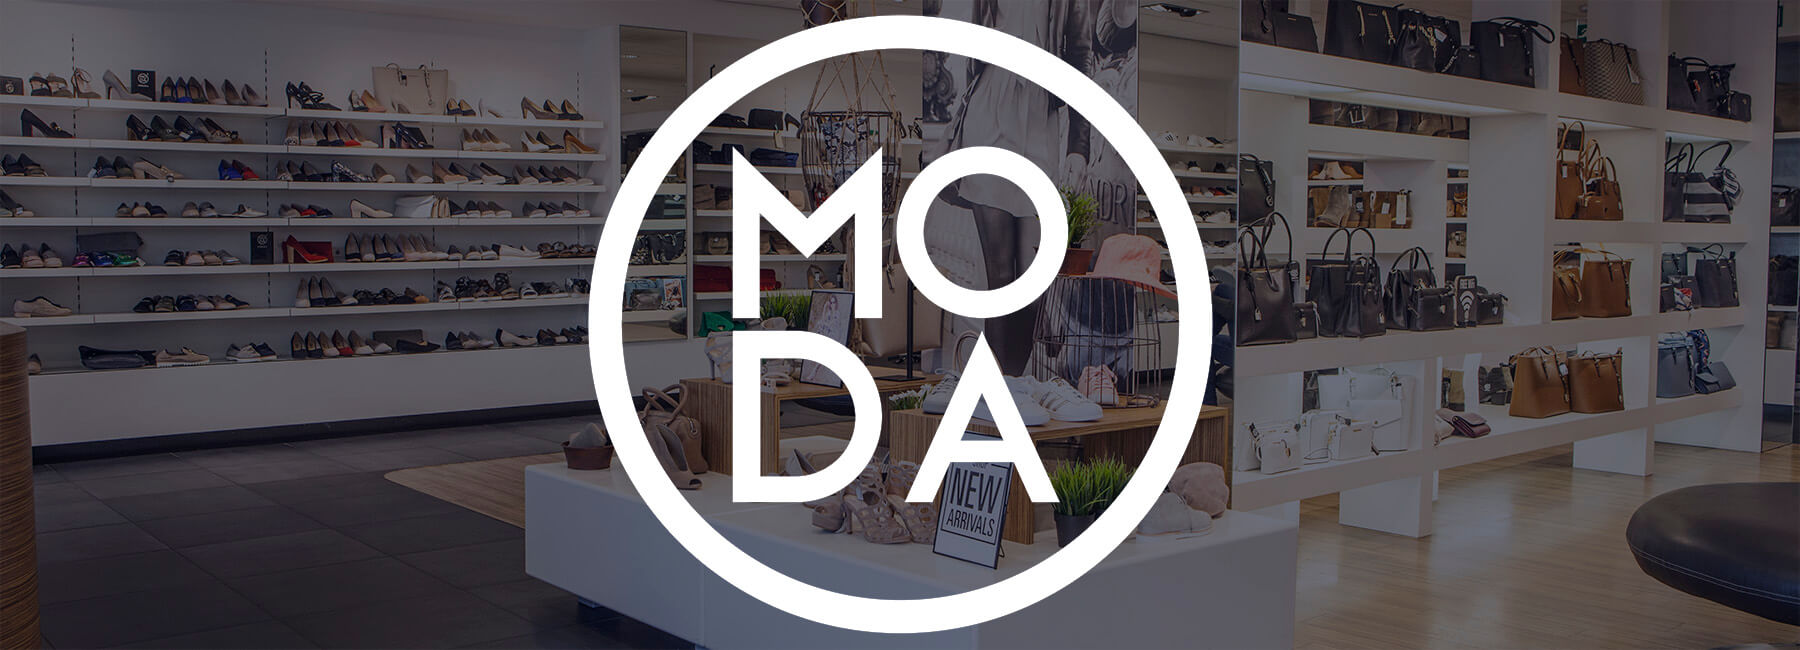 Omoda wil meer uit feedback halen en kiest voor Mopinion